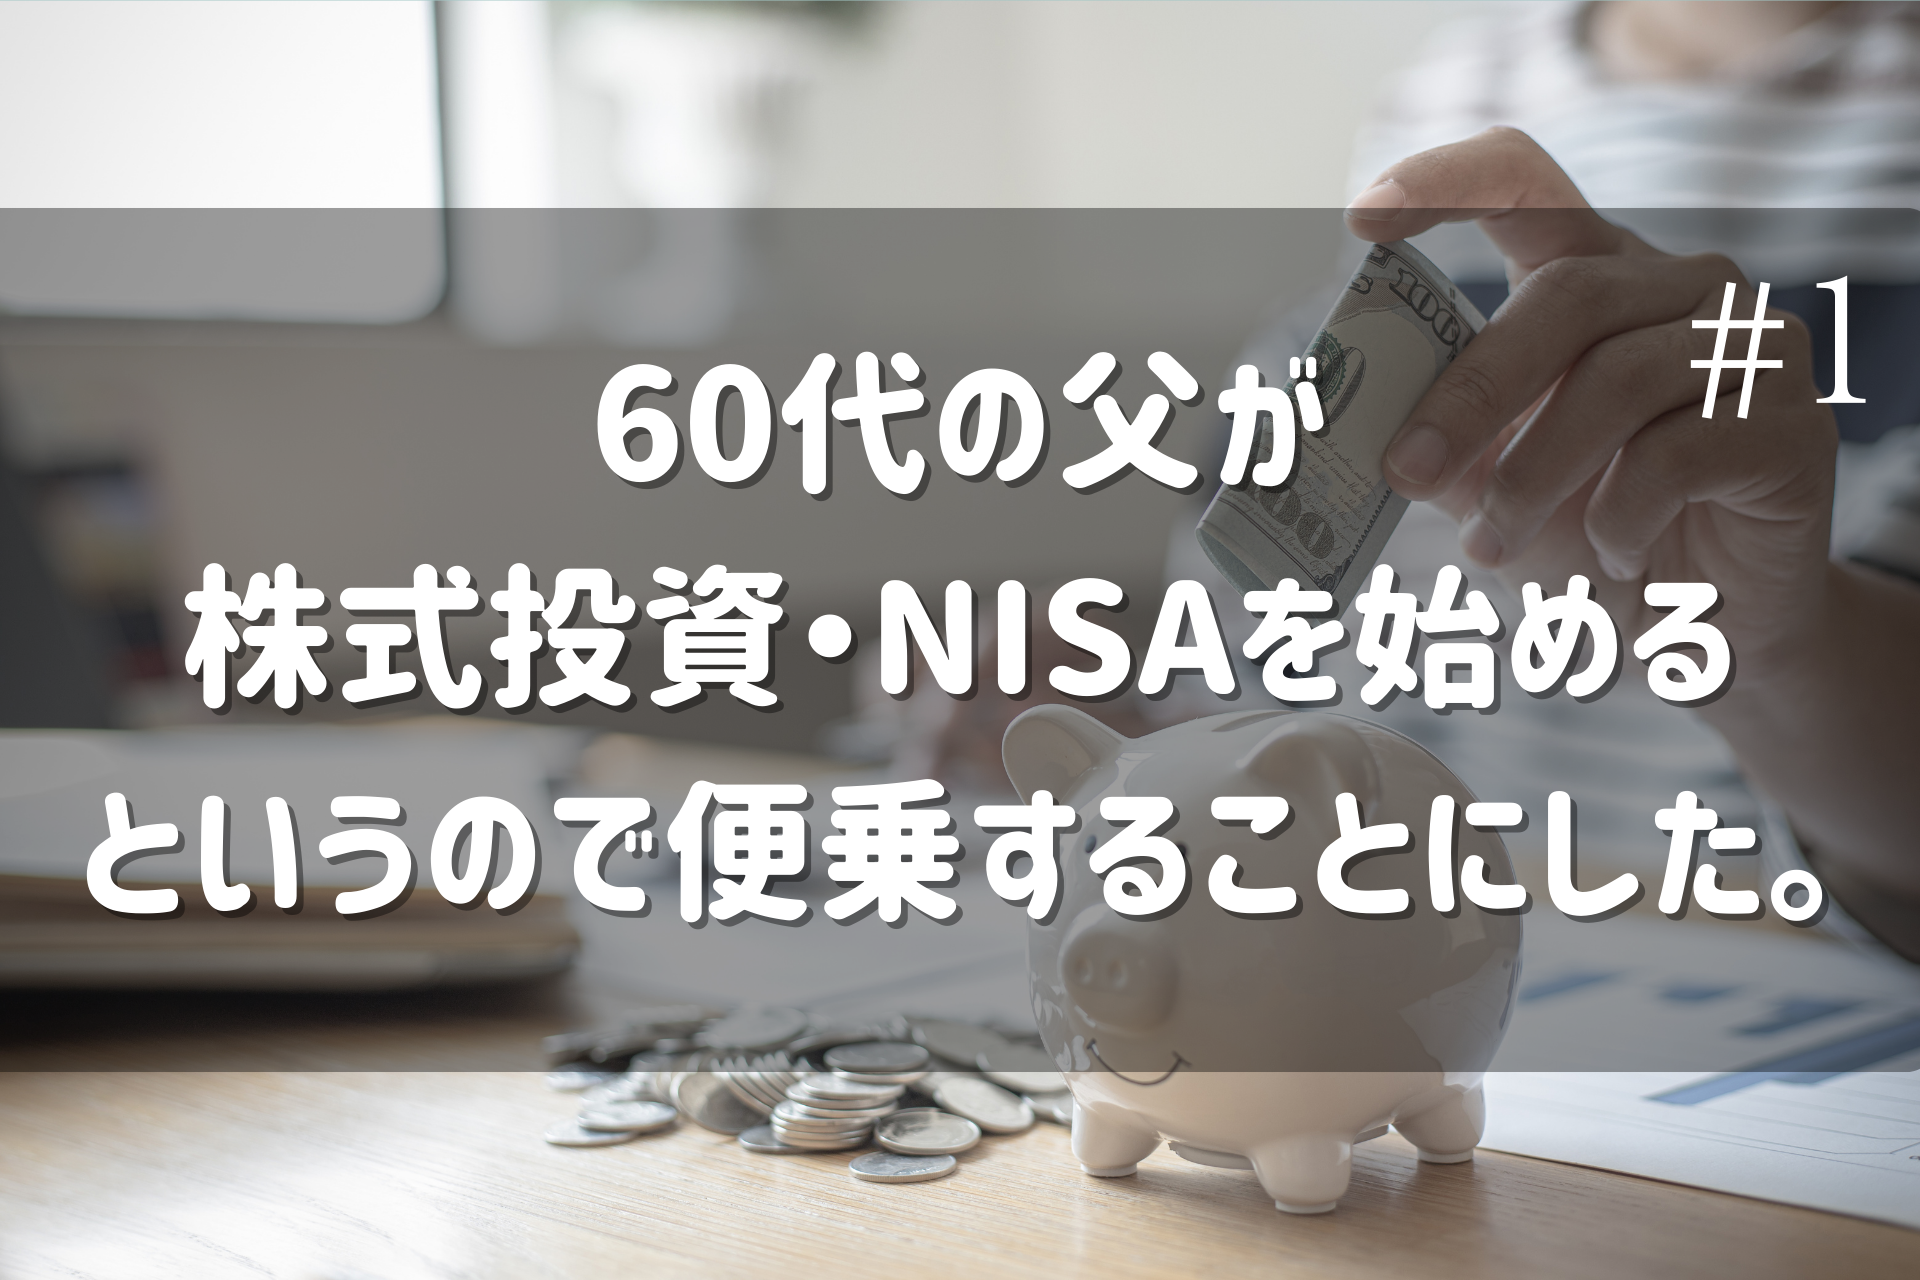 60代 投資NISA始める ブログ